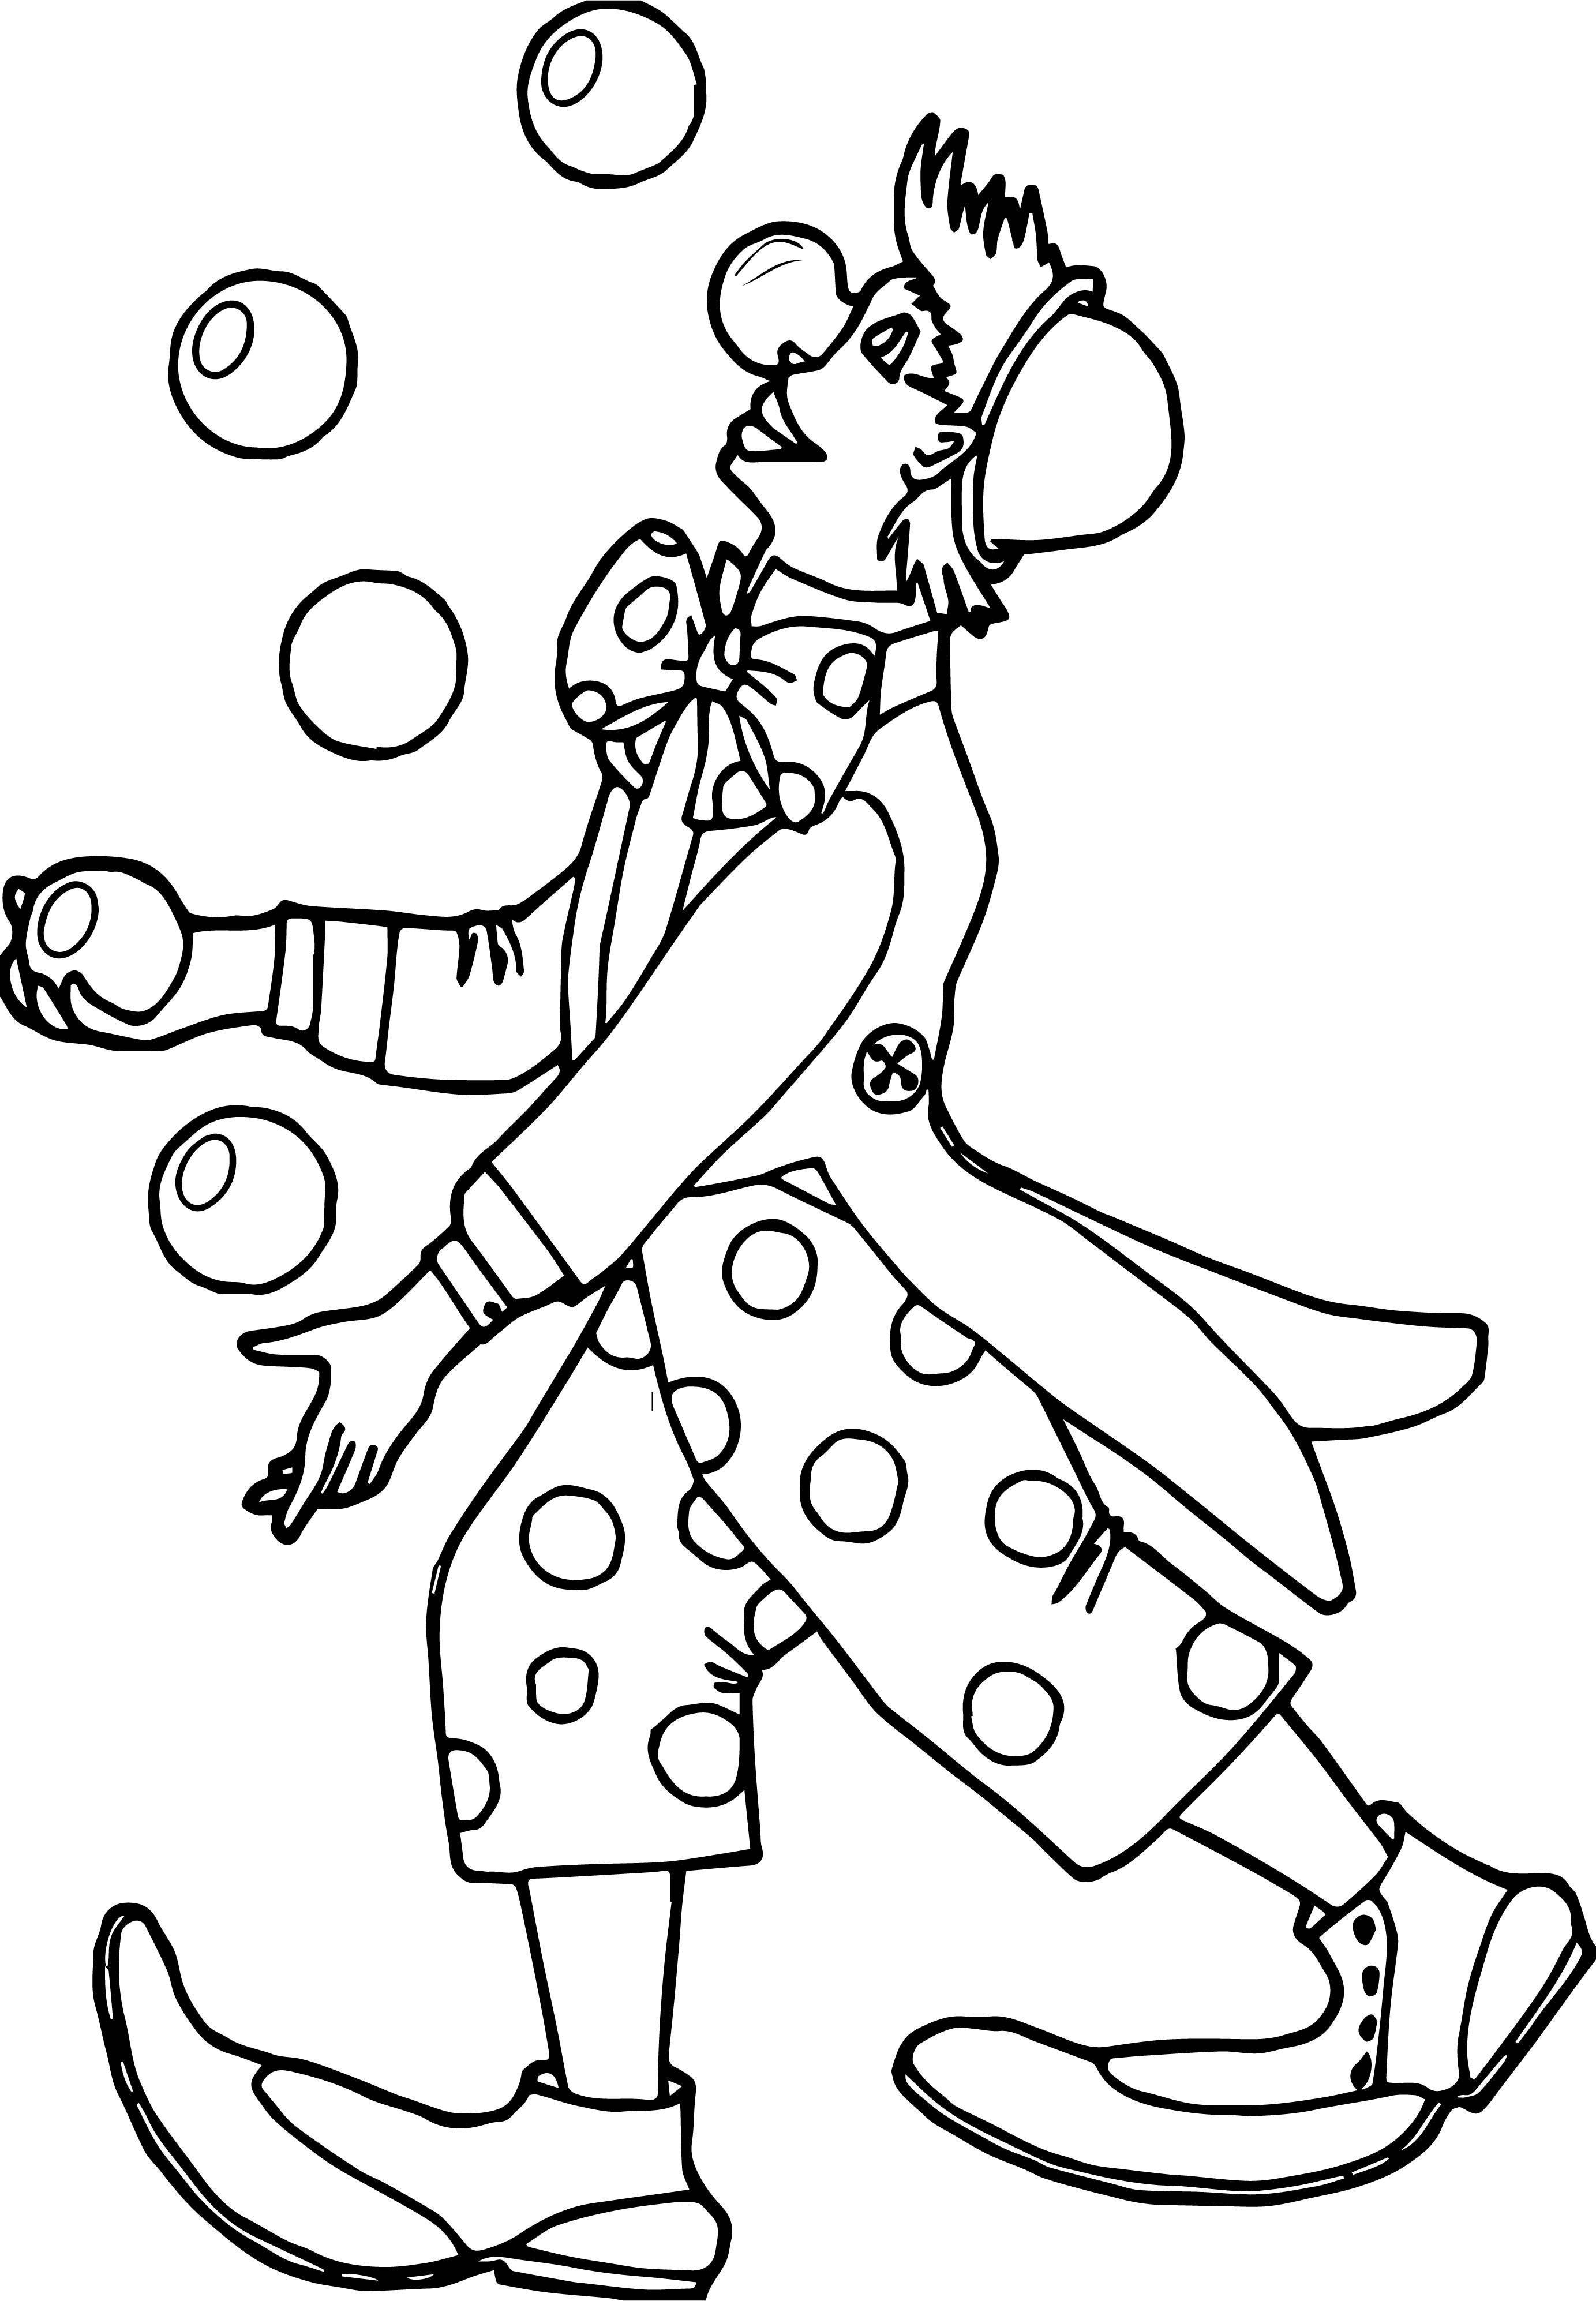 Девочка-жонглер на моноцикле. Раскраска на тему цирка